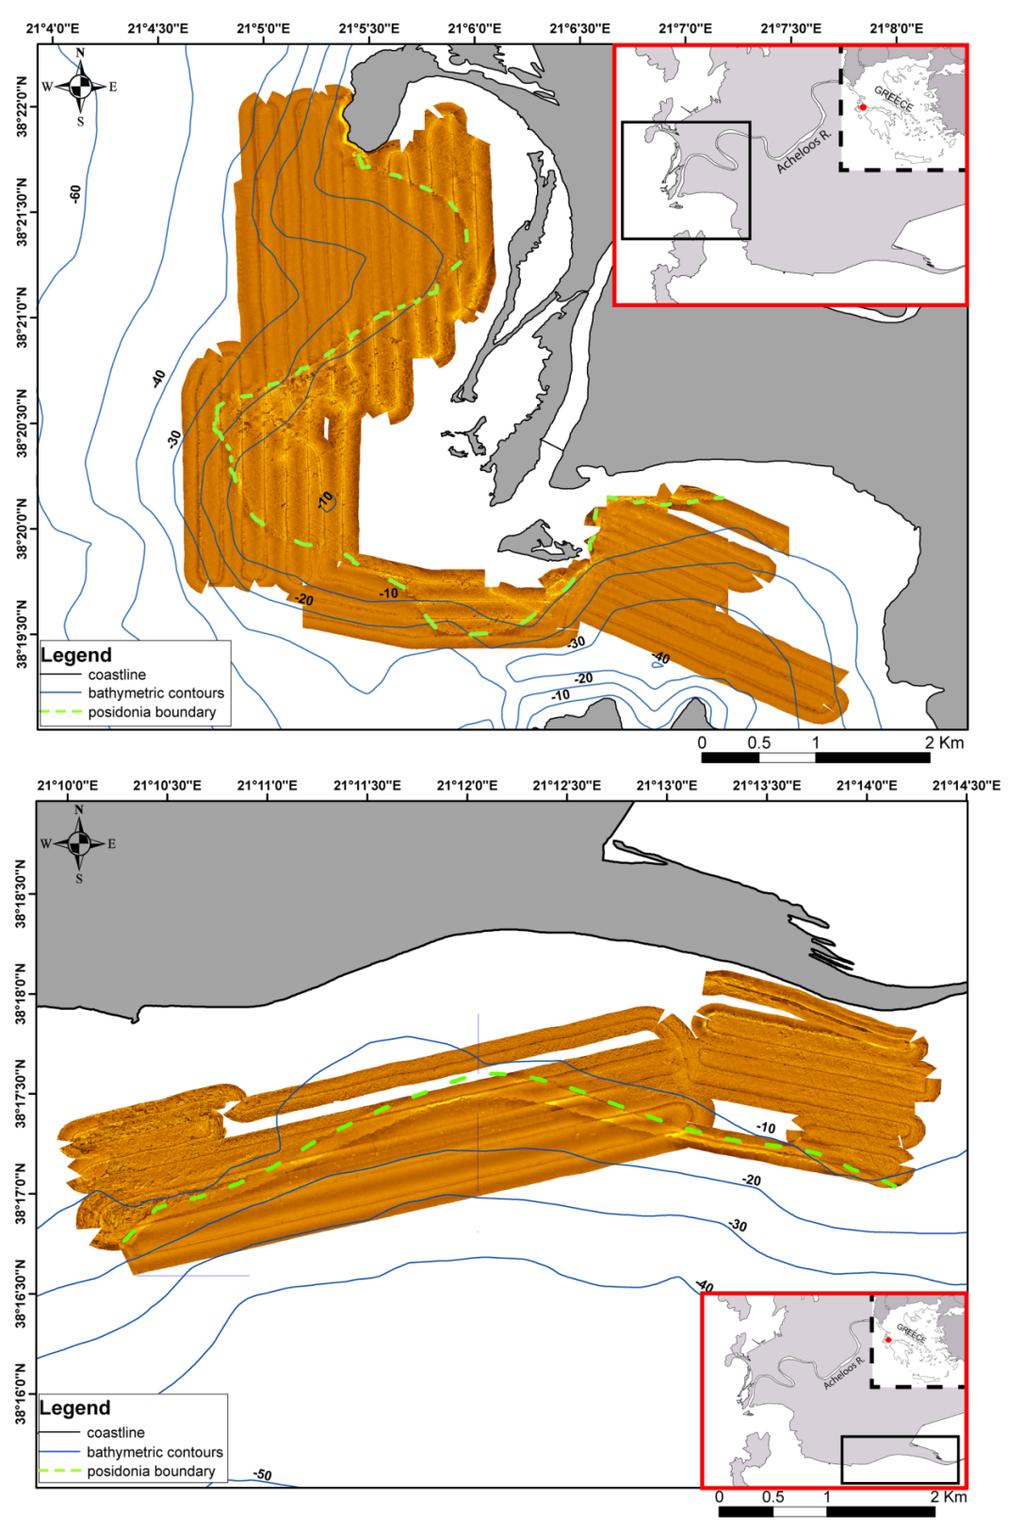 Το μωσαϊκό του ηχοβολιστικού πλευρικής σάρωσης που παρουσιάζεται στην εικόνα 9, παρουσιάζει τη ζωνώδη εξάπλωση των λιβαδιών Posidonia oceanica έως το βάθος των 10 περίπου μέτρων.